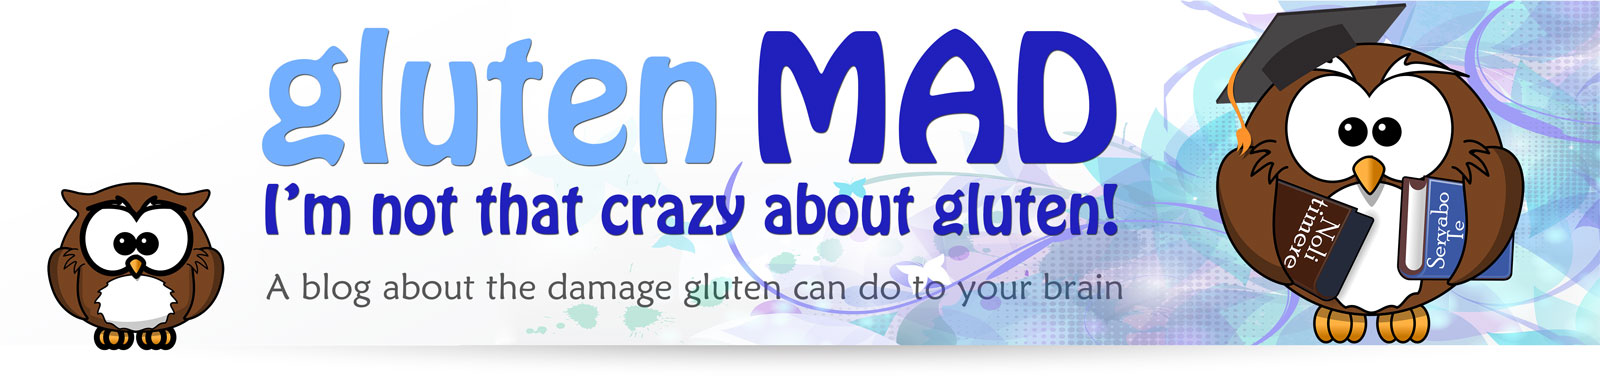 Gluten Mad - I'm not that crazy about gluten!